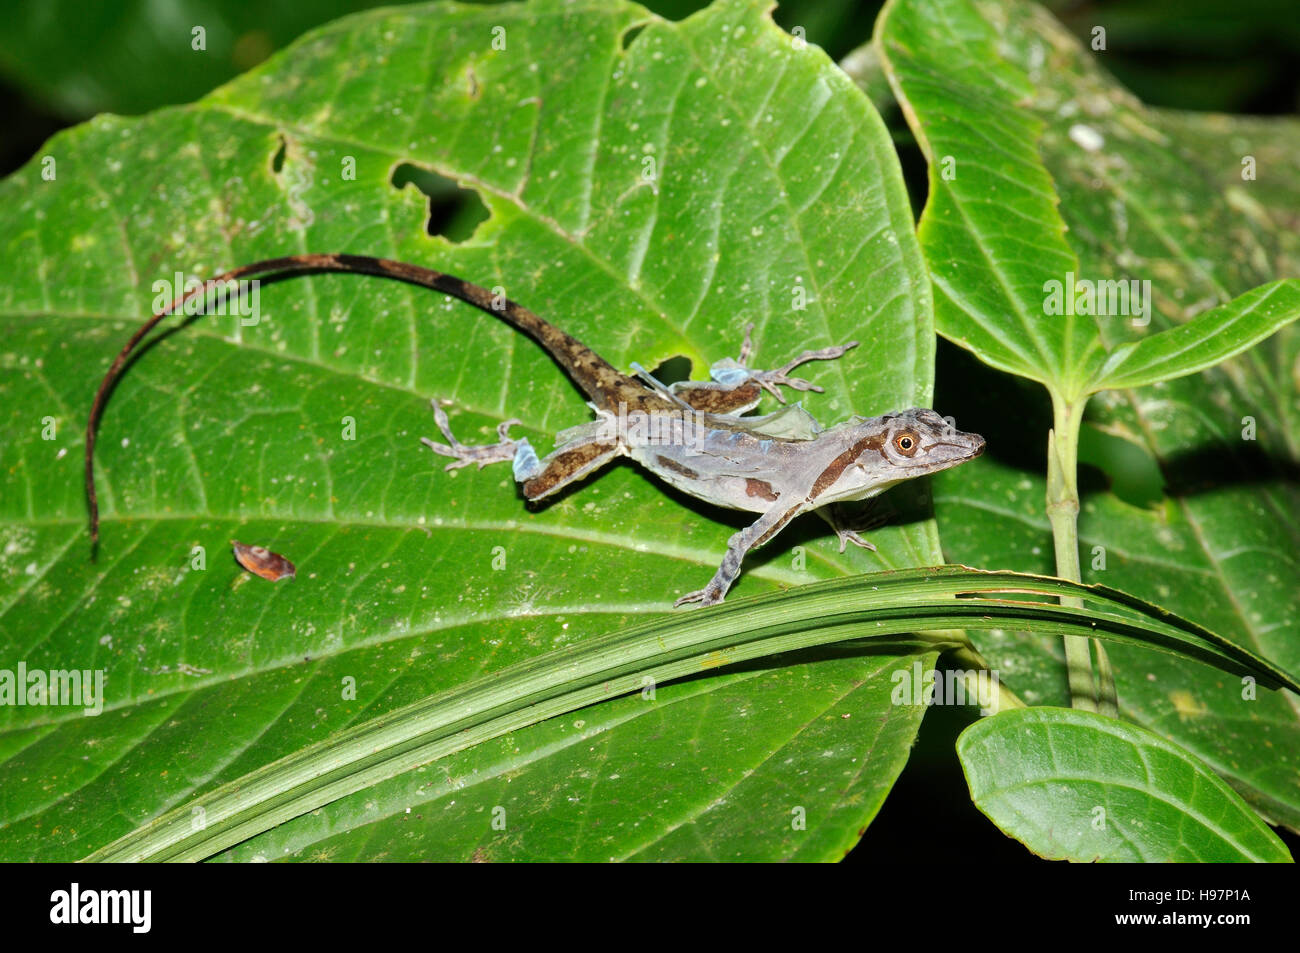 Anoles, Lizard during skinning, Rainforest, Gamboa, Panama Stock Photo